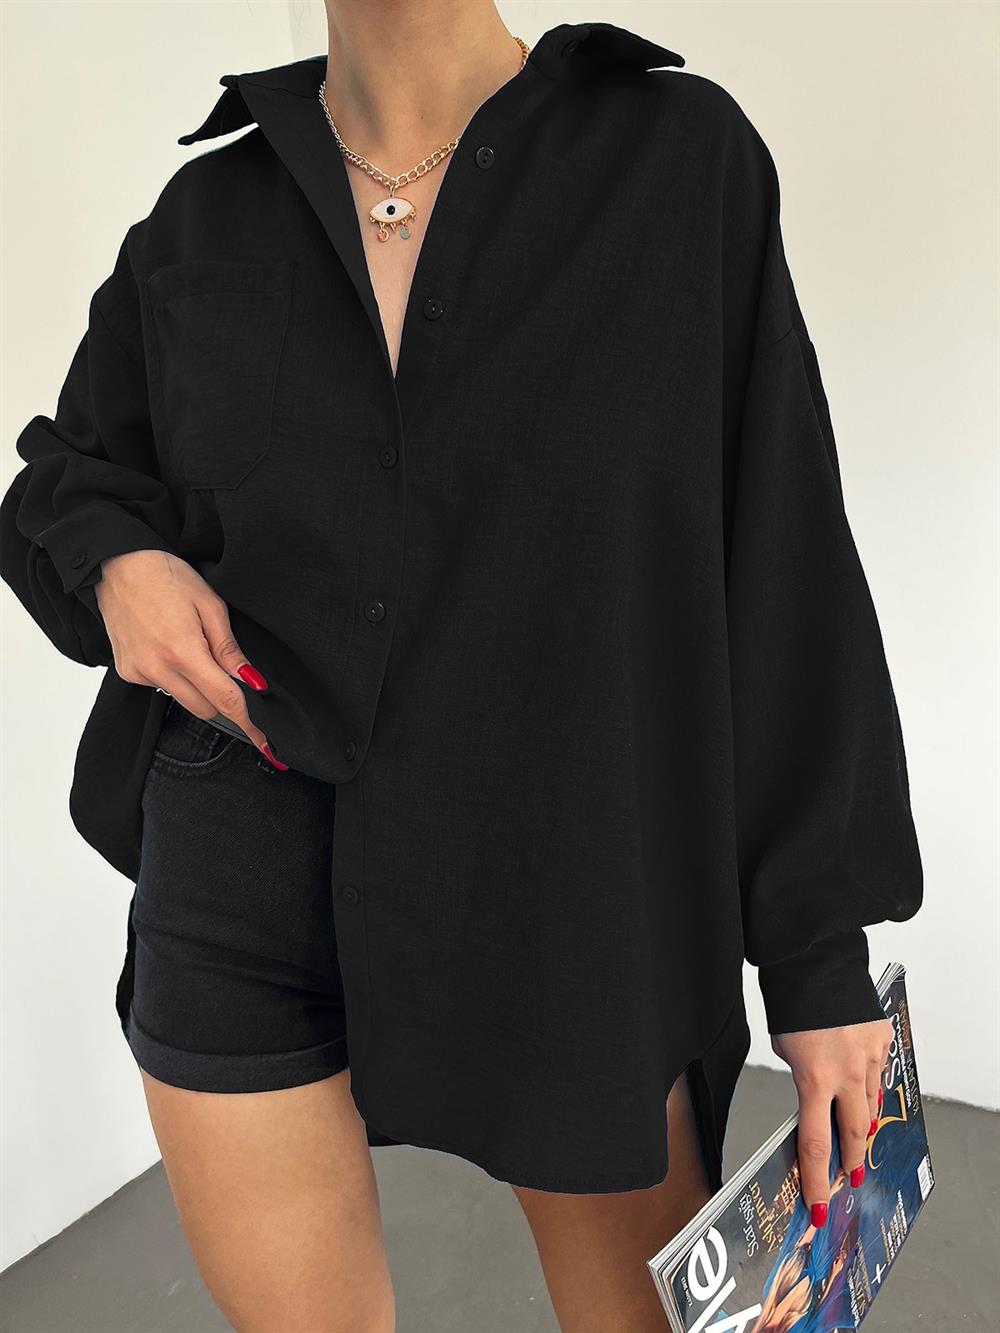 Kolu Çift Düğmeli Arkası Uzun Salaş Gömlek -Siyah - 246-1443-R01 | ŞAMDAN  Marka Gömlek Modelleri | Kadın Tesettür Giyim - KaliteMall.com